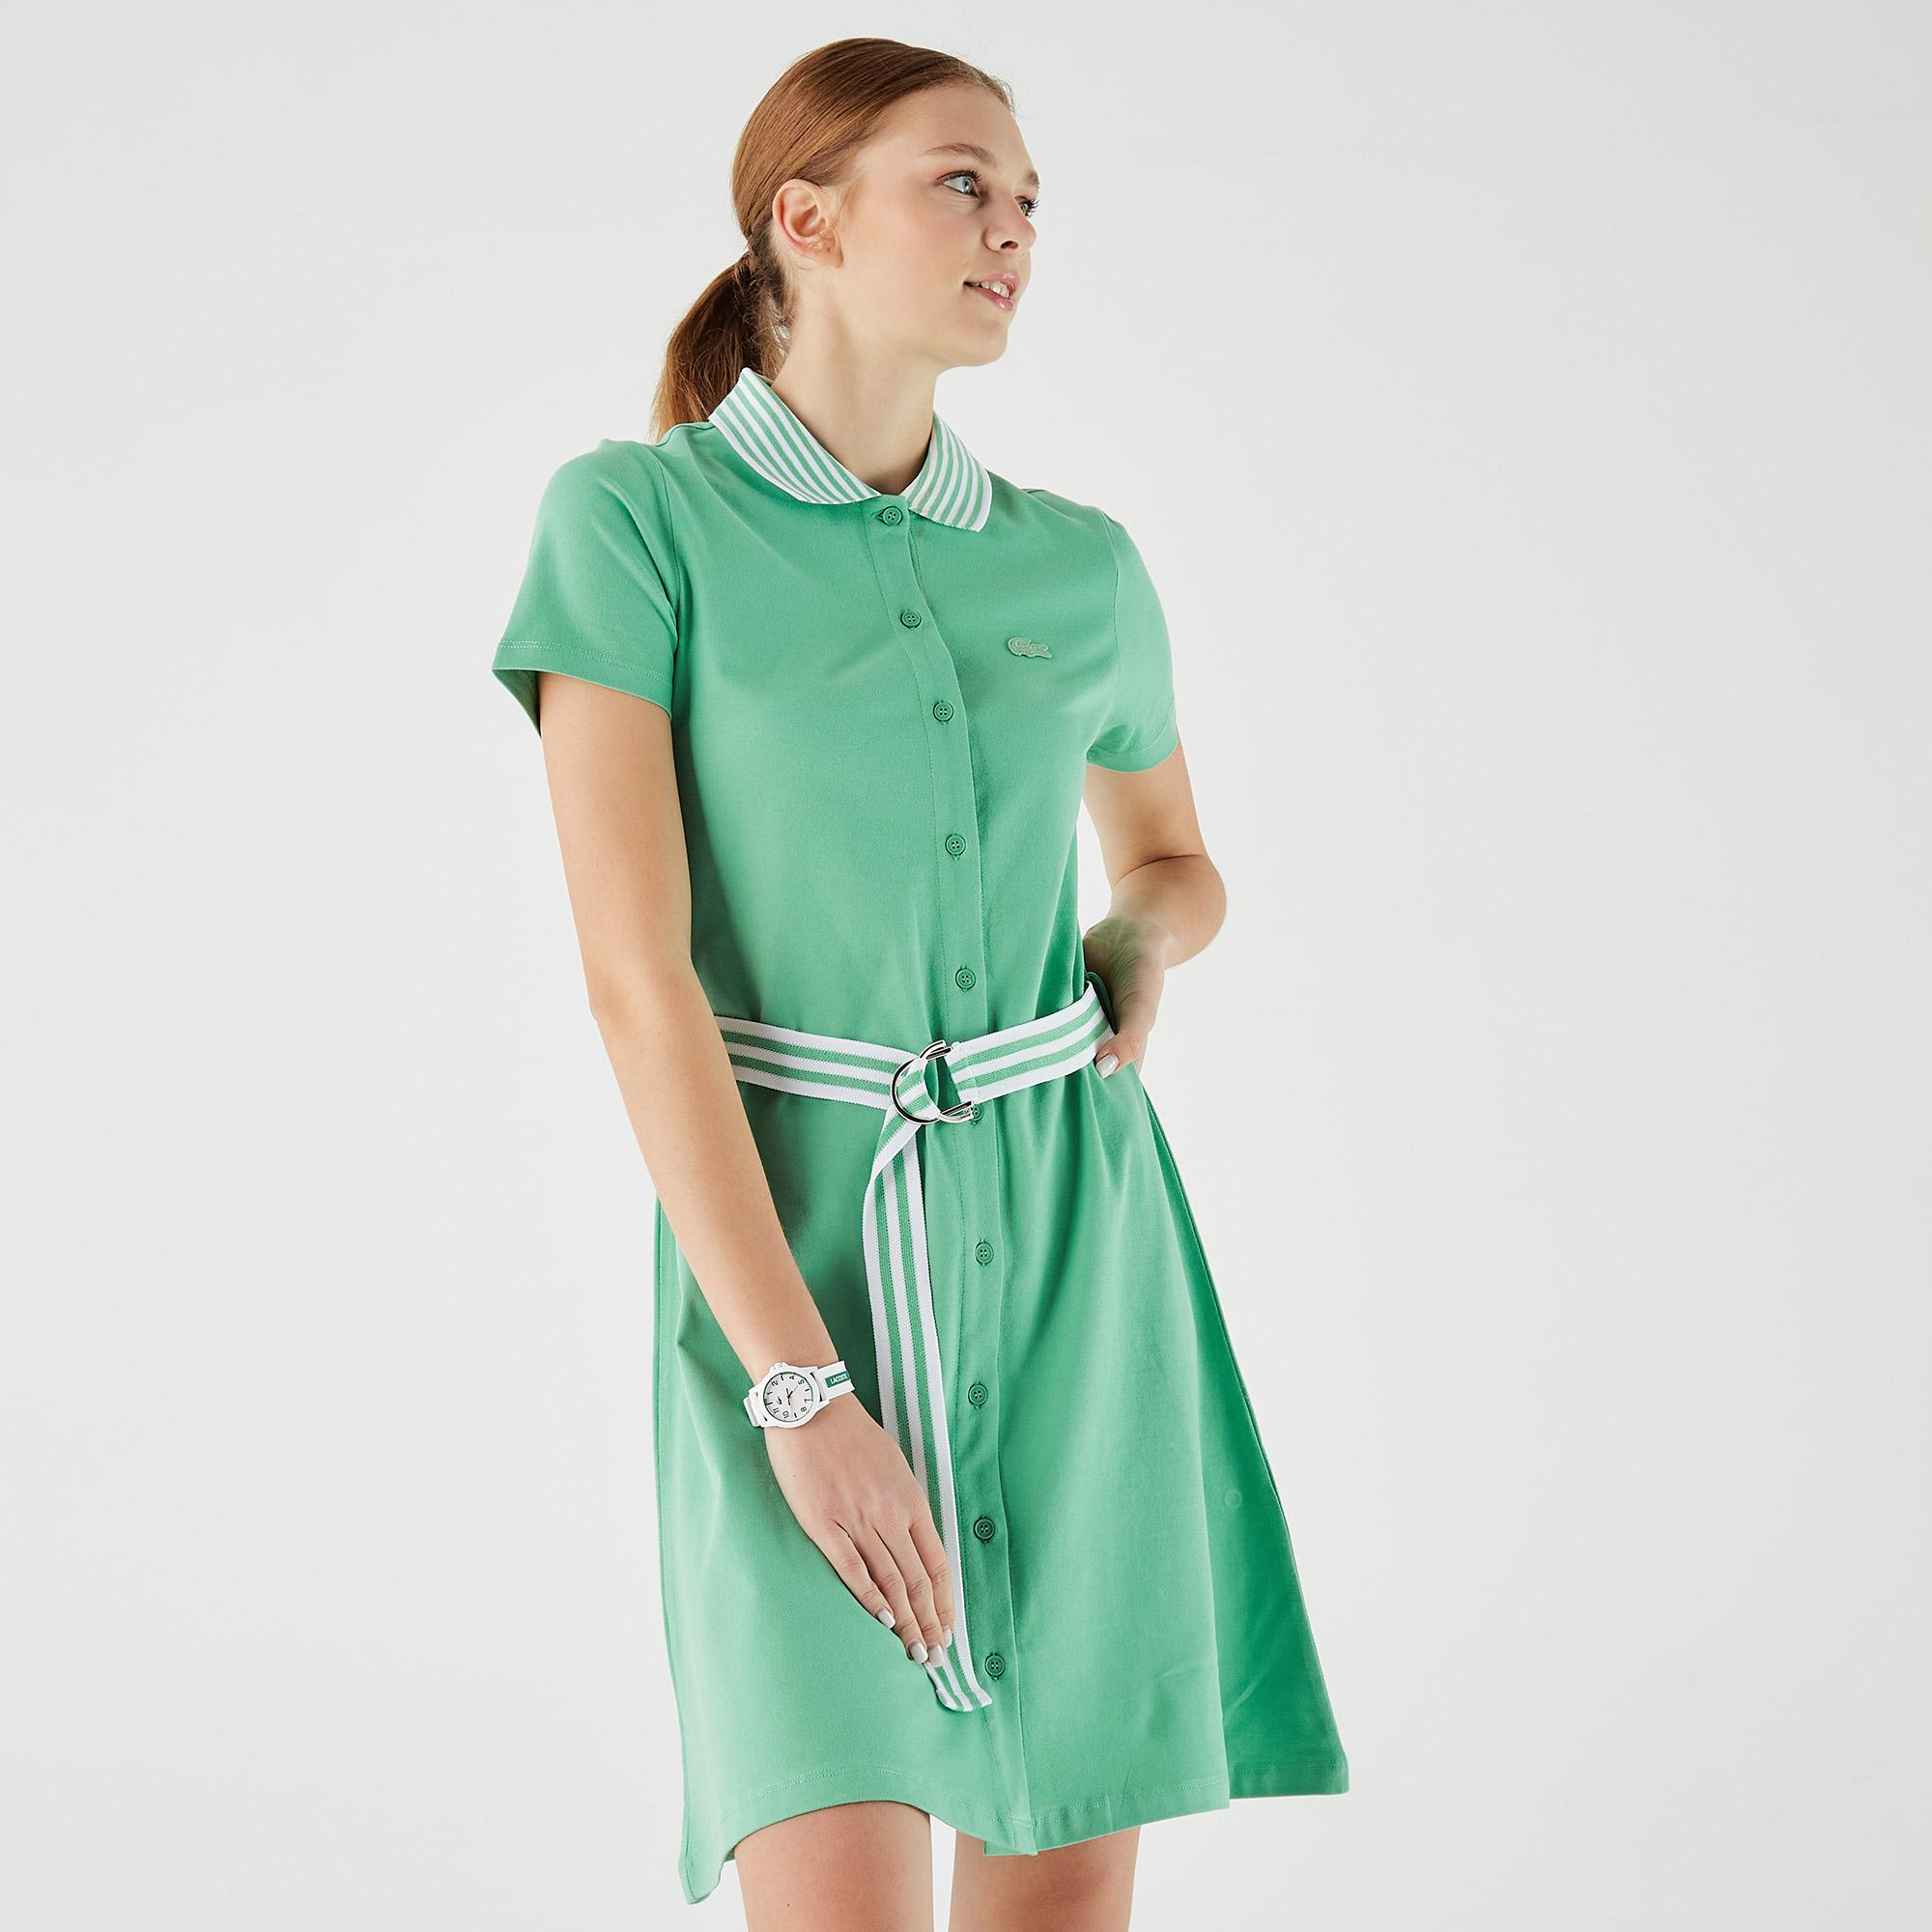 Lacoste Kadın Loose Fit Kısa Kollu Gömlek Yaka Yeşil Elbise. 4